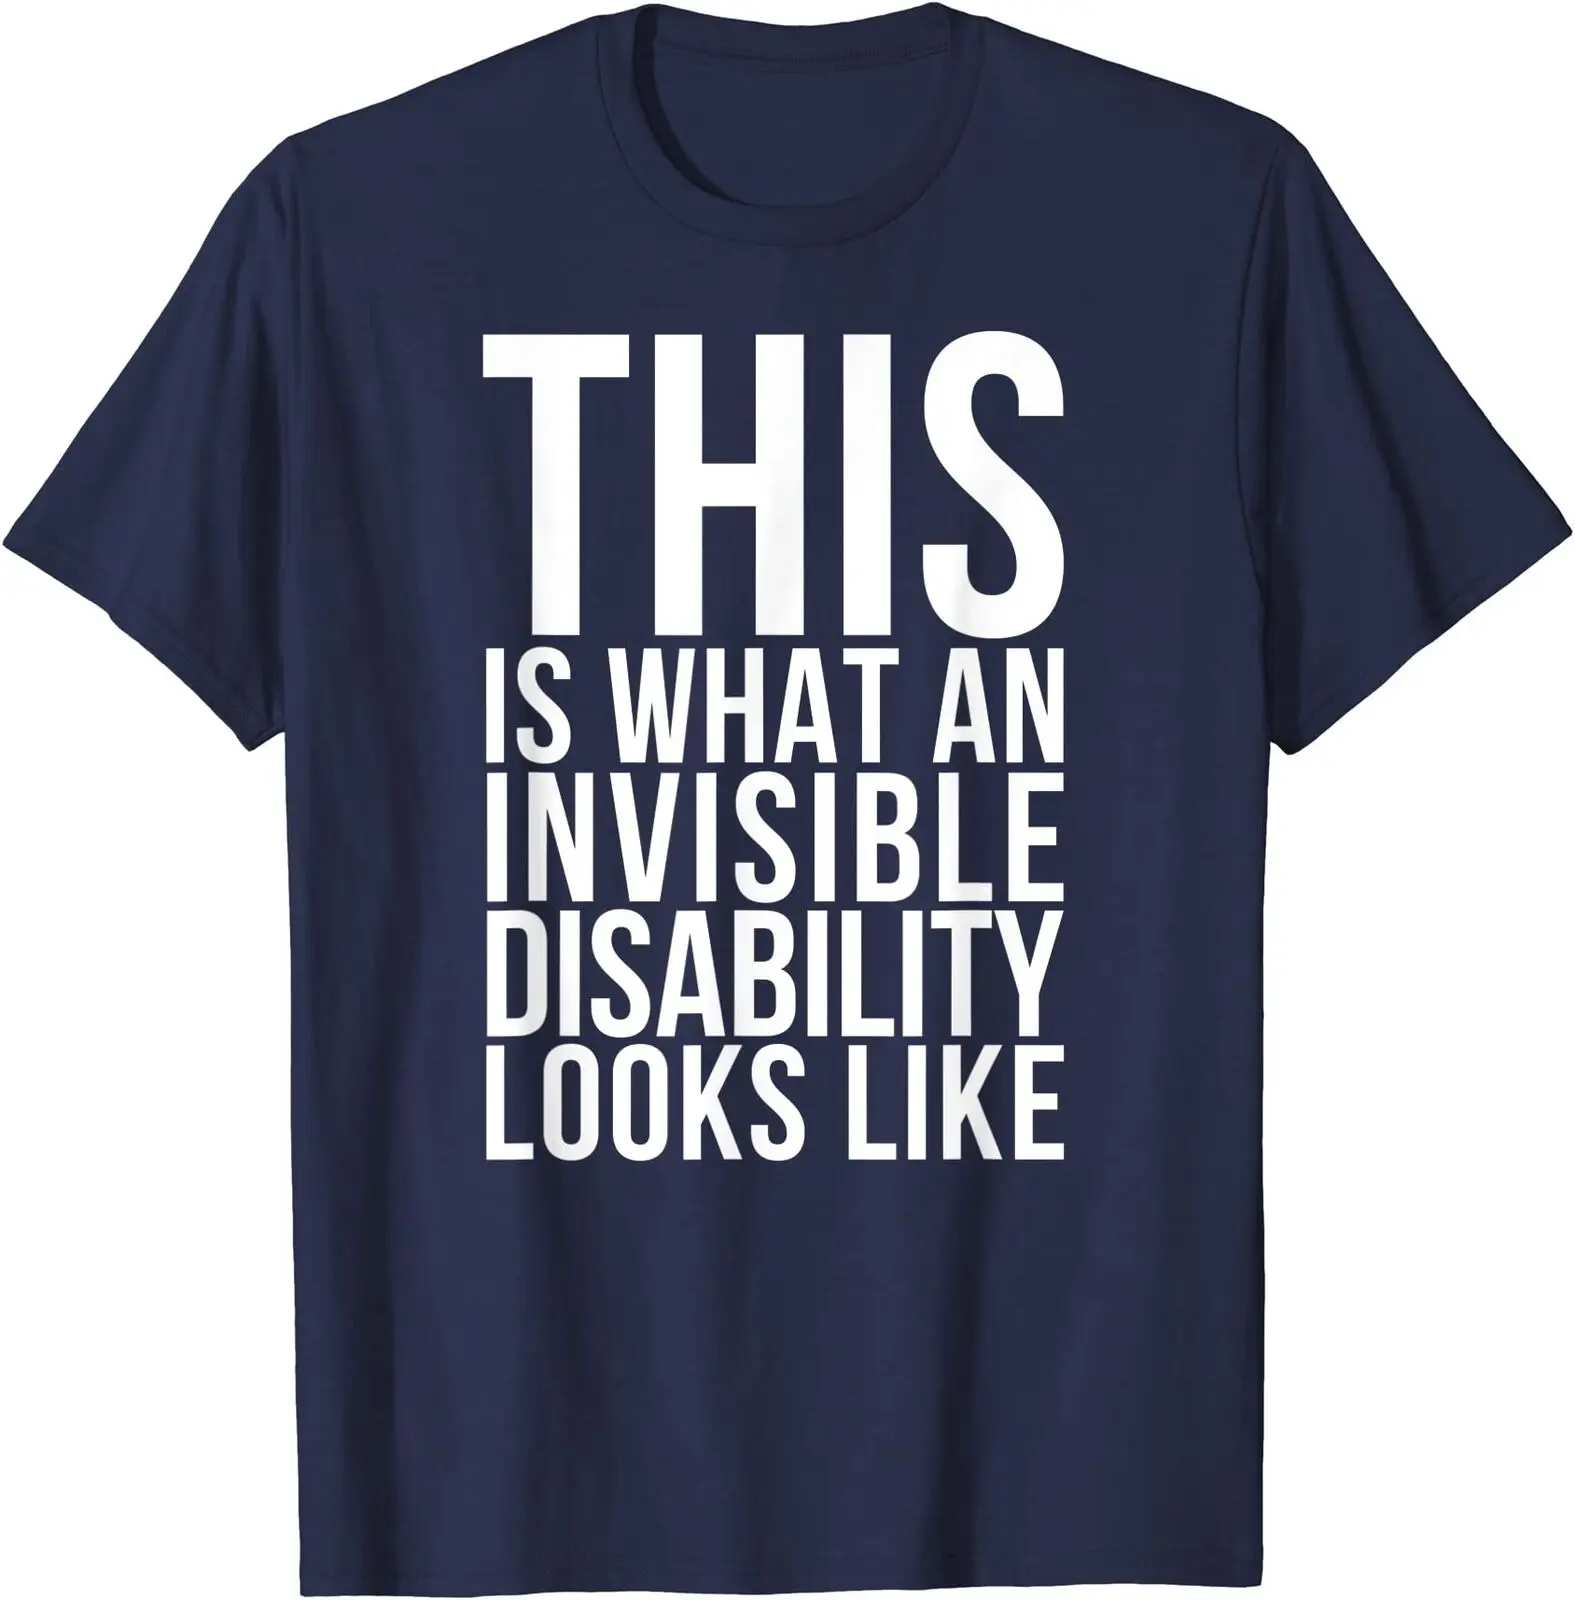 Футболка унисекс с невидимой инвалидностью, осведомленностью о хронических болях, заболеваниях